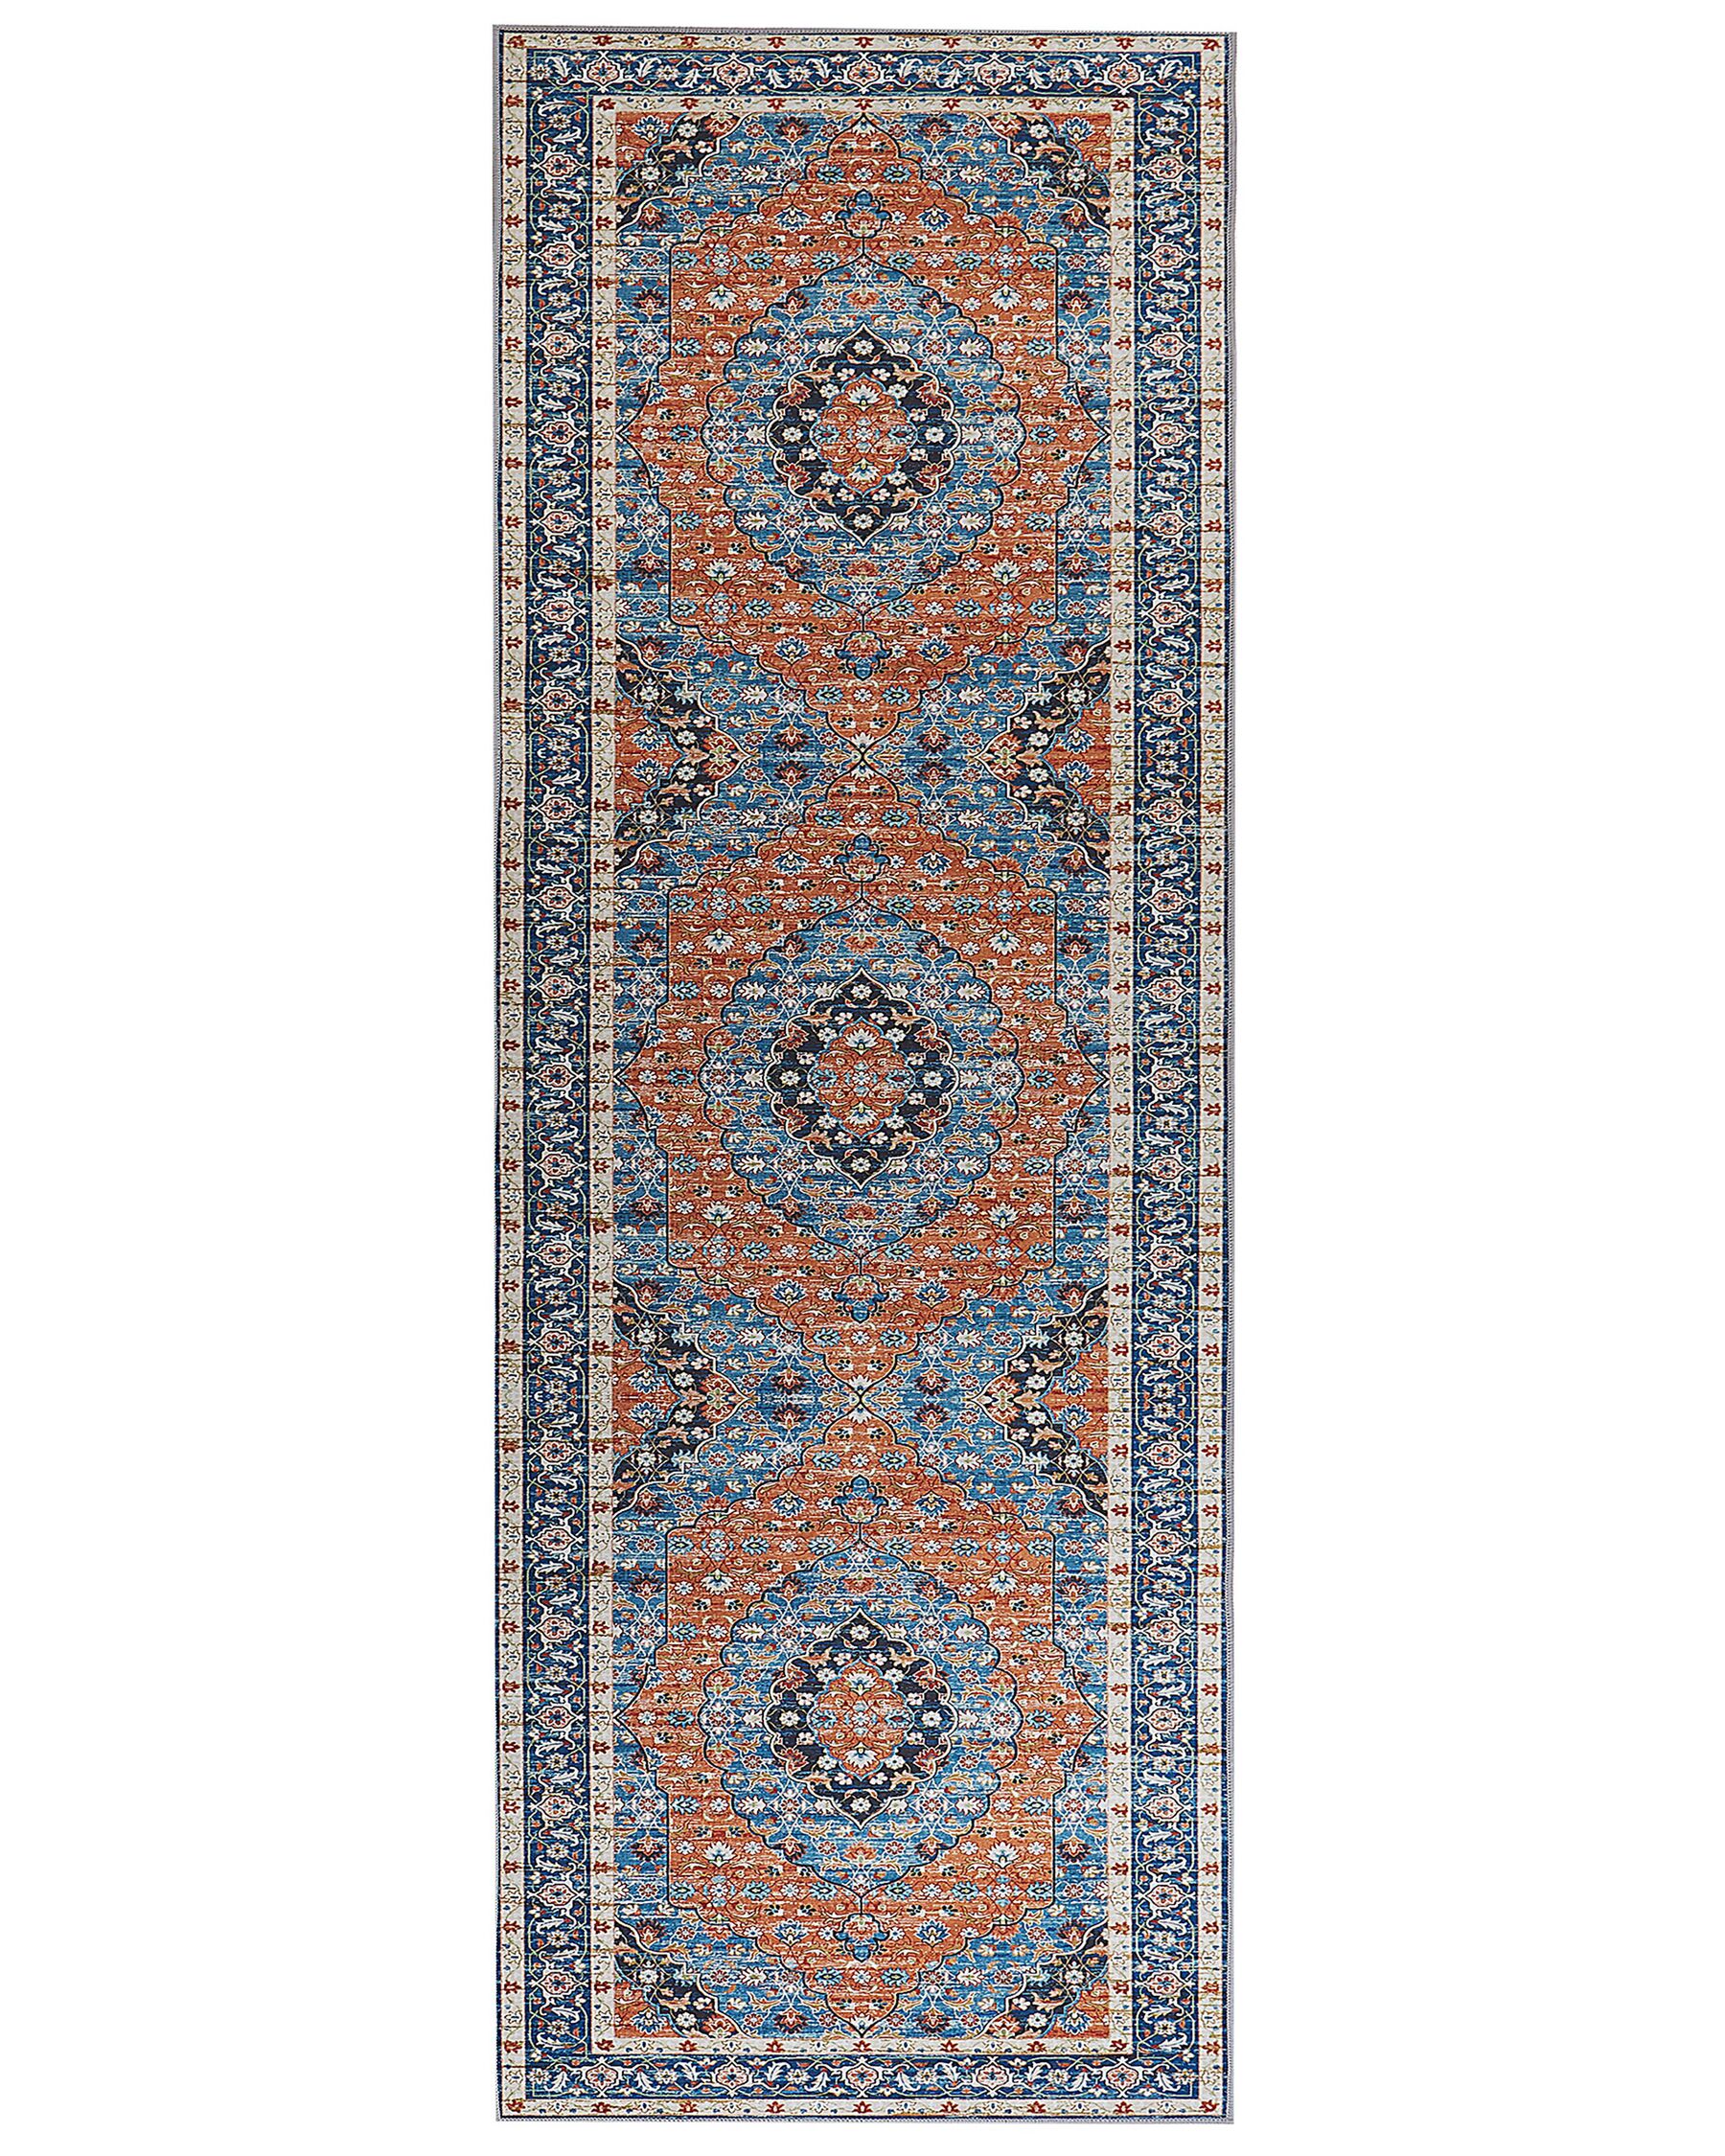 Teppich blau / orange 70 x 200 cm orientalisches Muster Kurzflor MIDALAM_831381